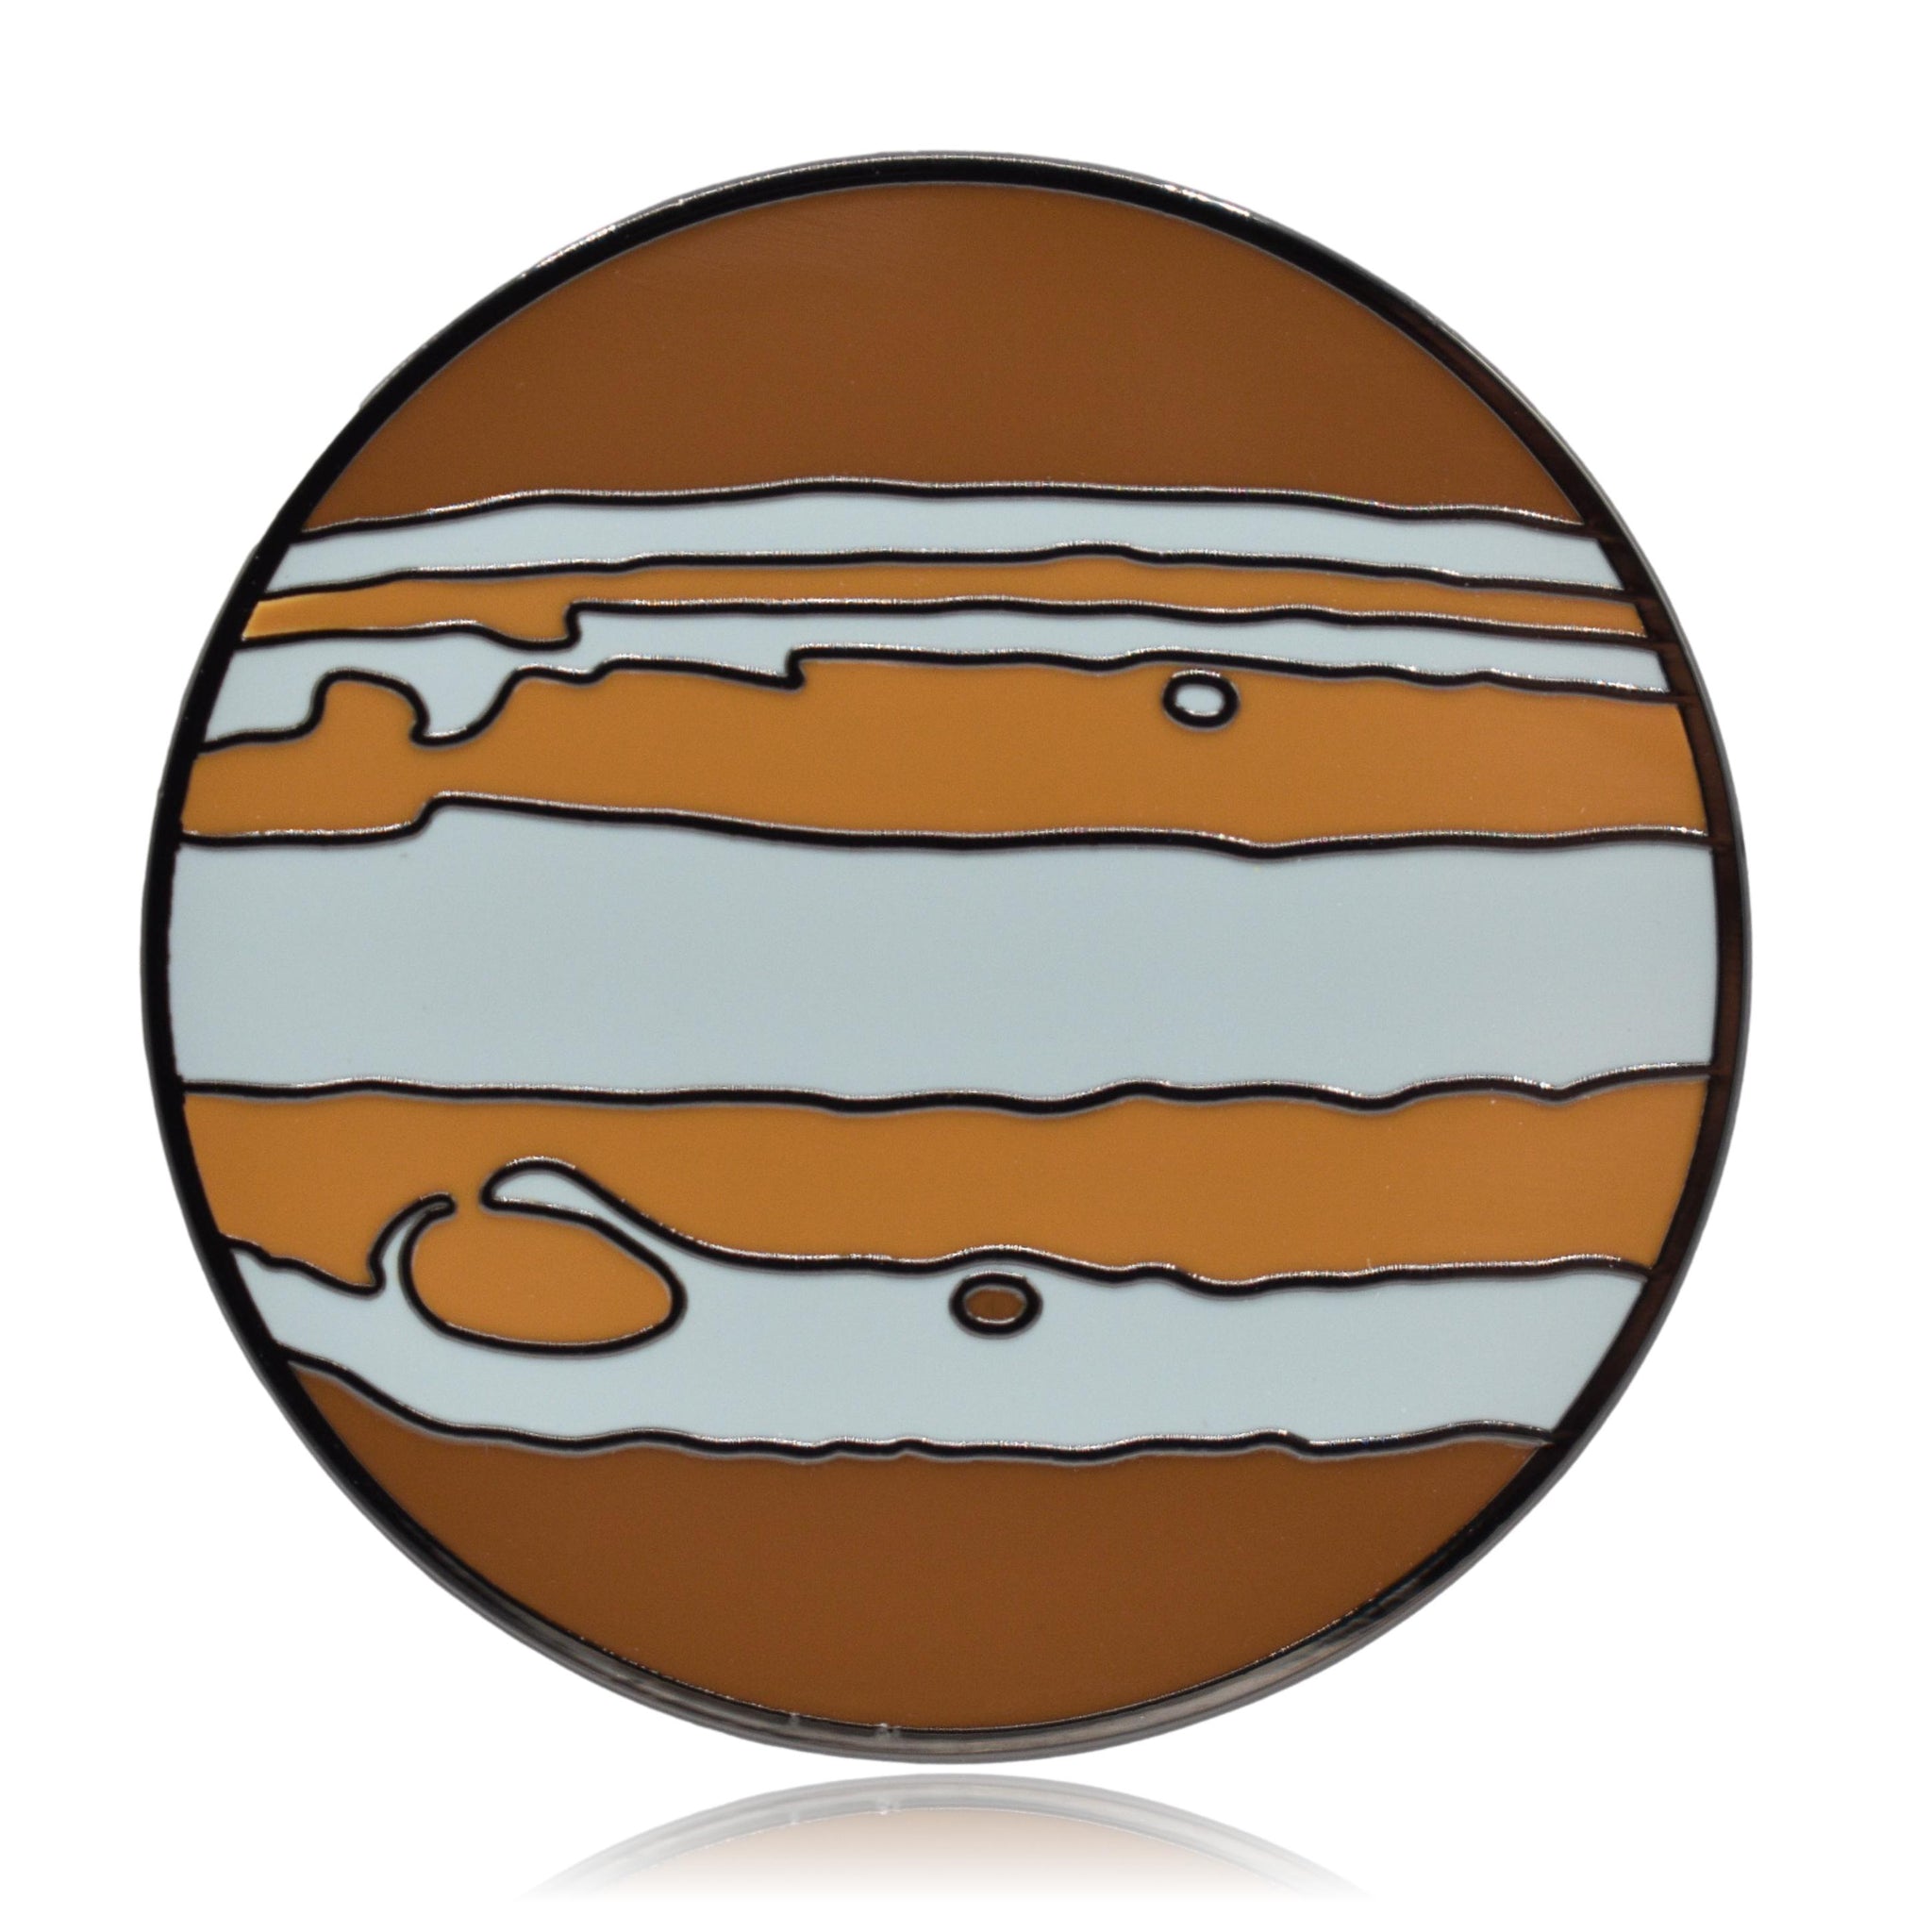 Planet Jupiter Enamel Pin | Clayton Jewelry Labs